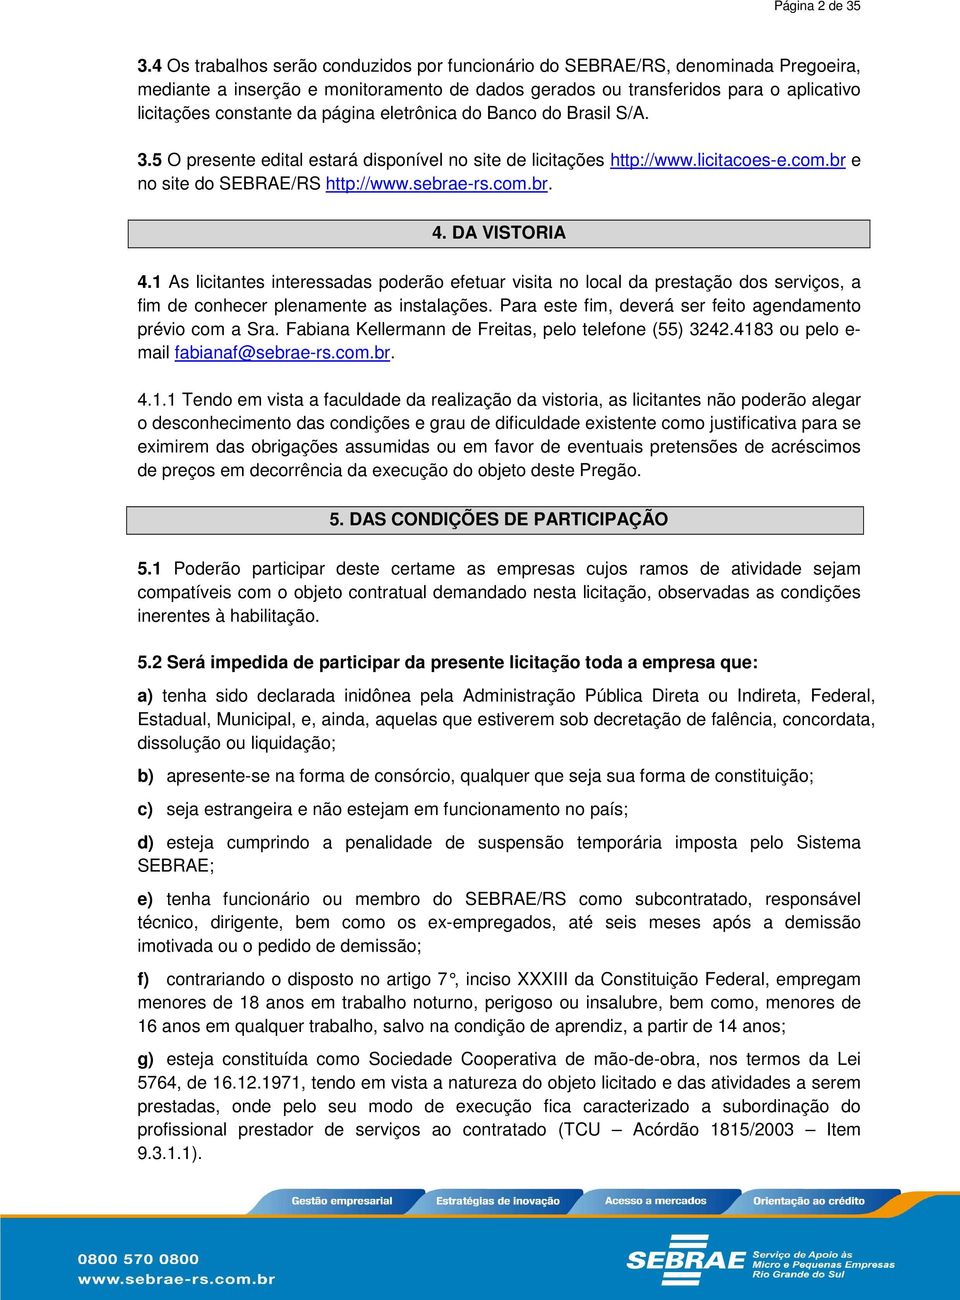 página eletrônica do Banco do Brasil S/A. 3.5 O presente edital estará disponível no site de licitações http://www.licitacoes-e.com.br e no site do SEBRAE/RS http://www.sebrae-rs.com.br. 4.